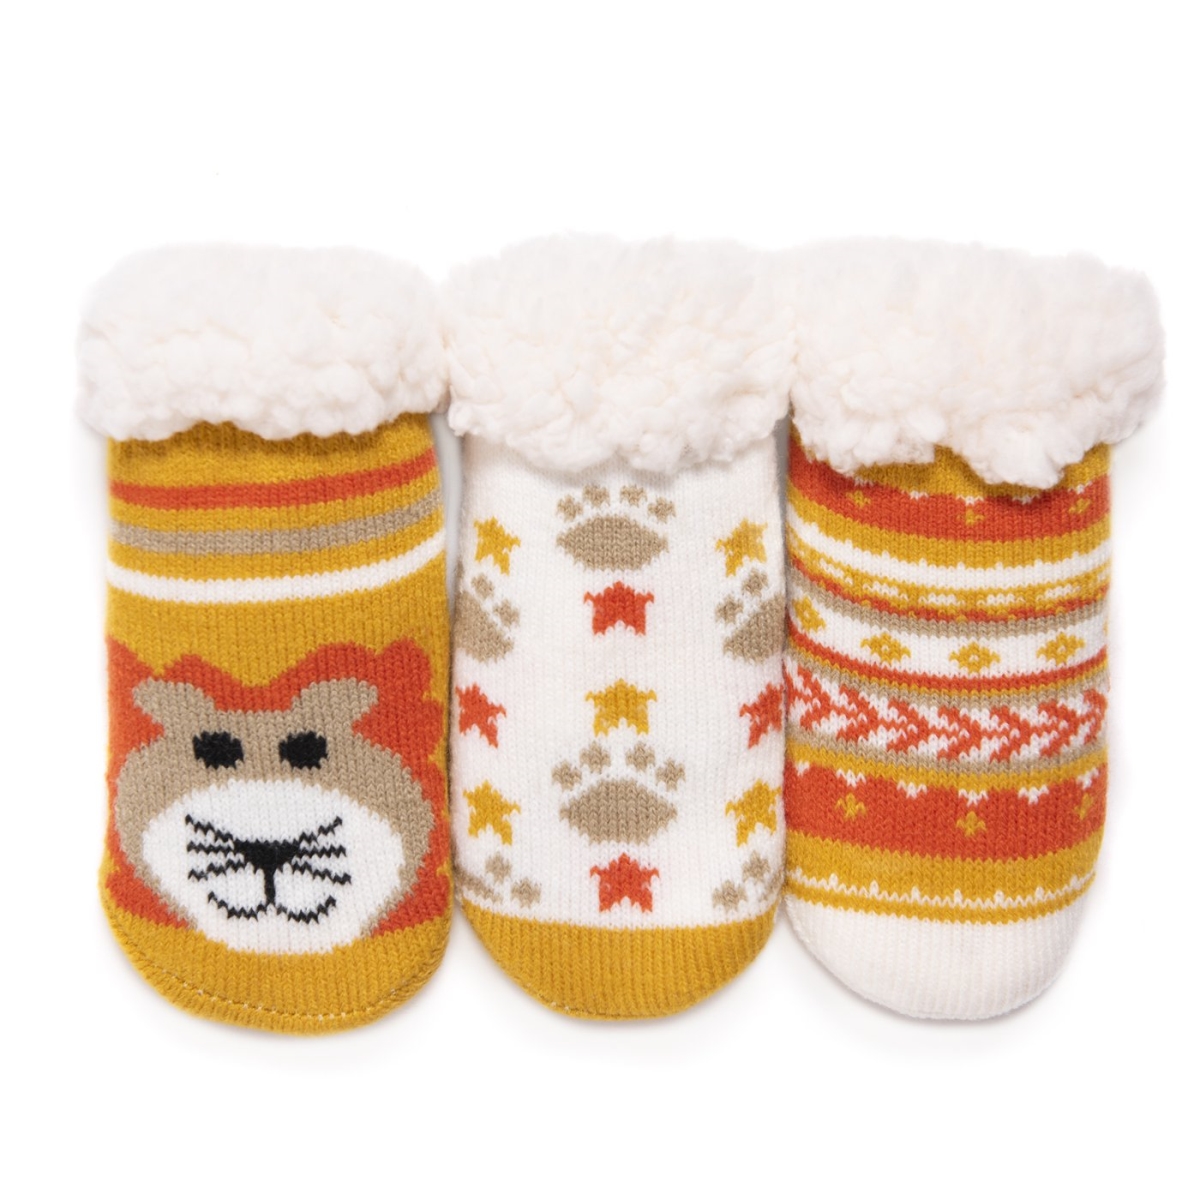 0023012710-inf5 Babys Cabin Socks, Infant 5 - Pack Of 3